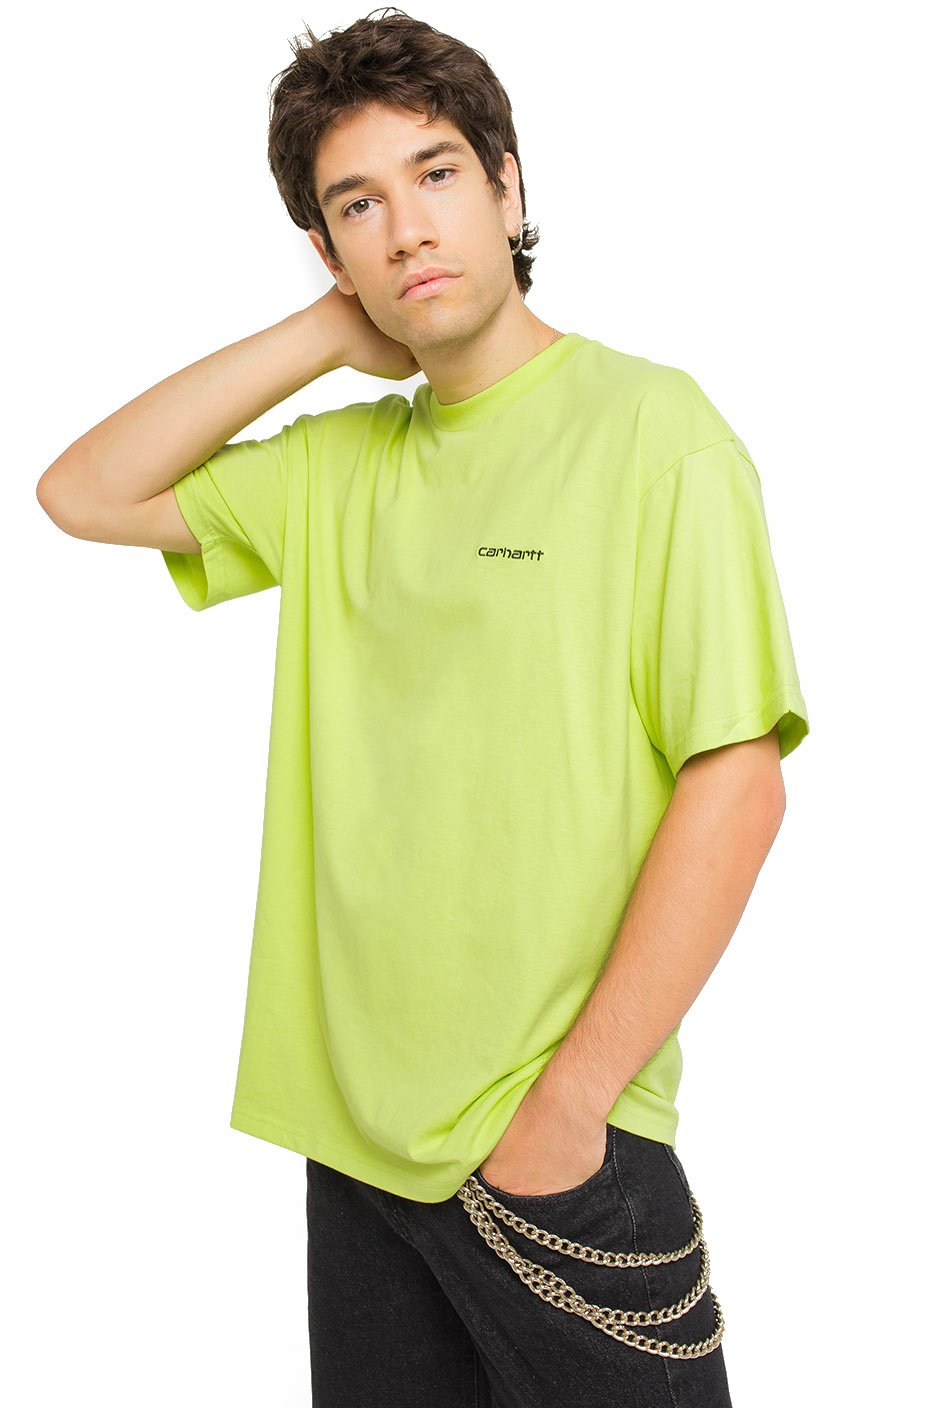 Carhartt Pocket T-Shirt in Puderrosa